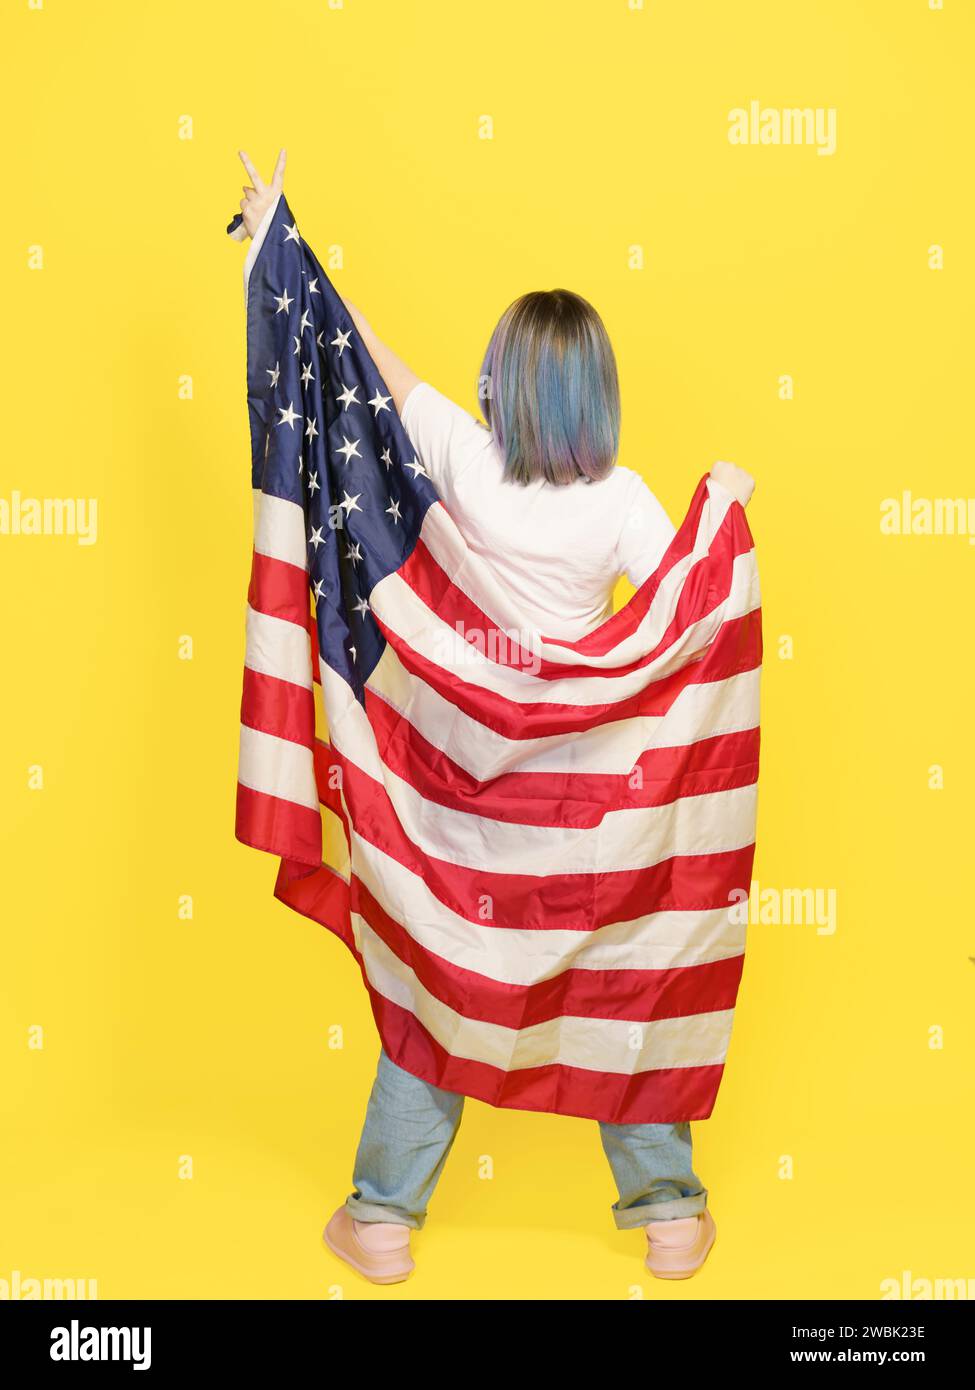 Signe de victoire par fille couvert de drapeau américain, fierté patriotique, diversité culturelle et liberté. Adolescent isolé sur fond jaune avec espace de copie pour votre texte. Vue arrière pleine hauteur . Photo de haute qualité Banque D'Images